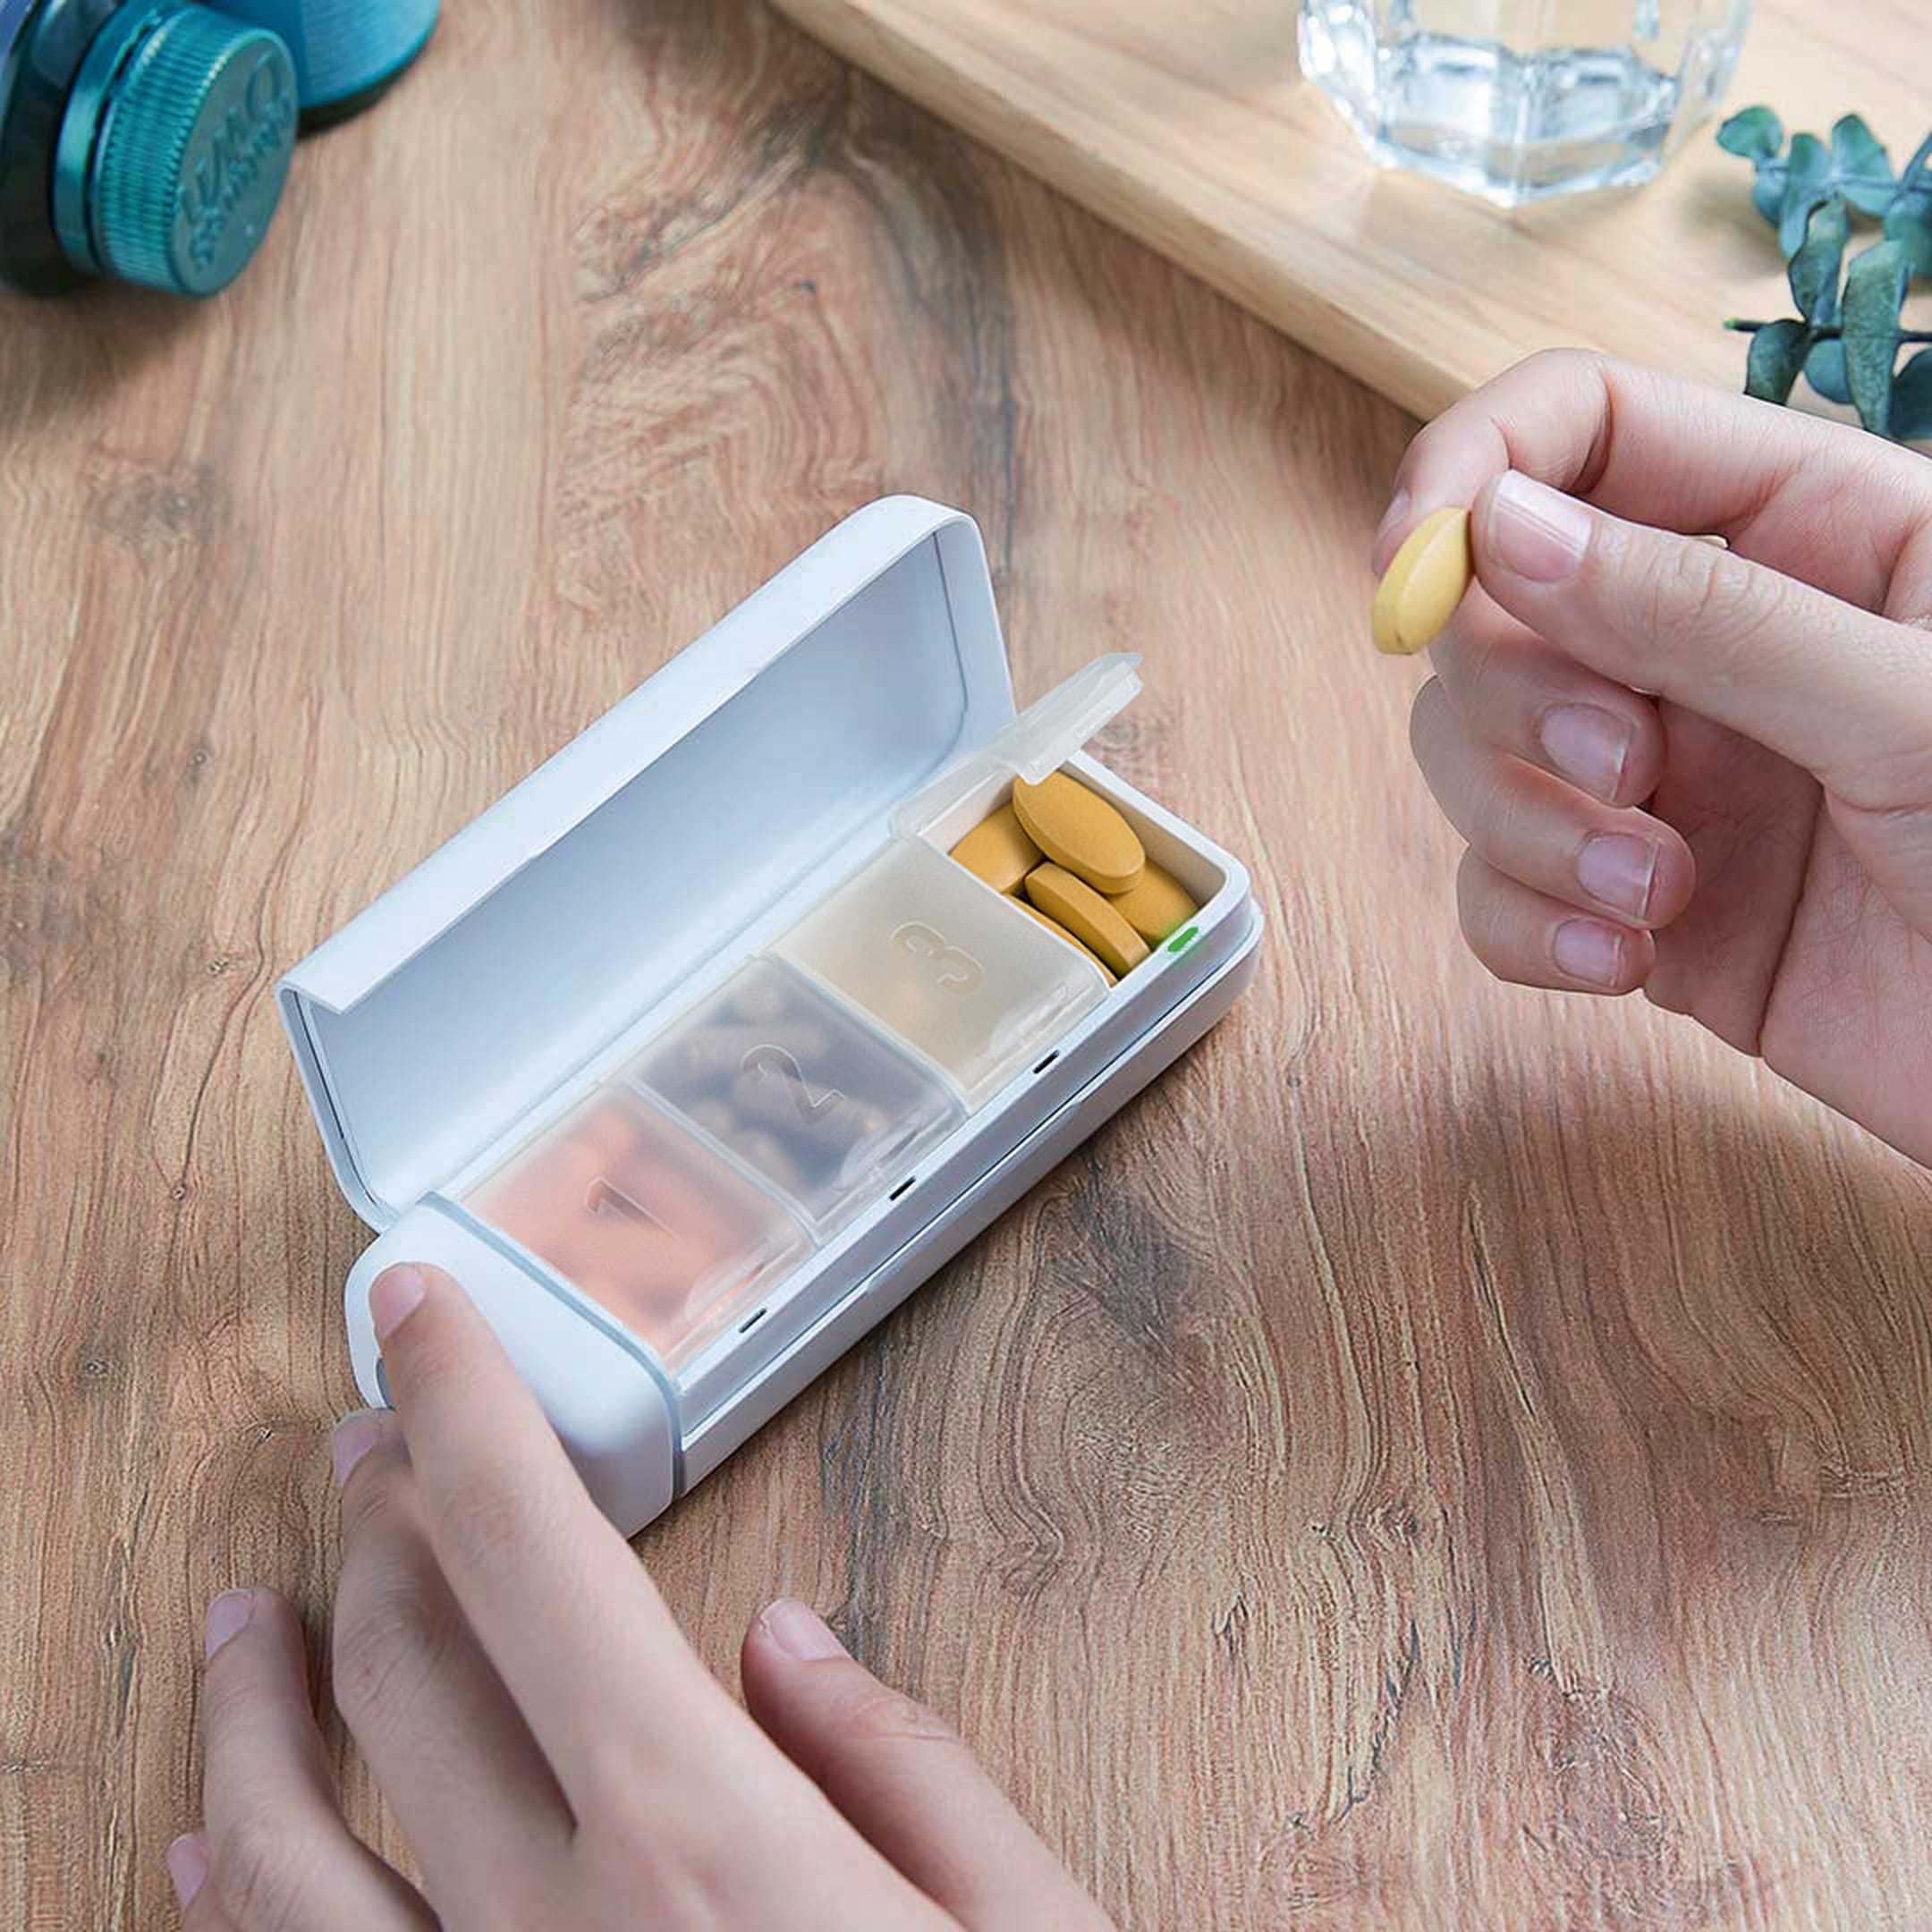 Fruitech’s HiPee Smart Pillbox 